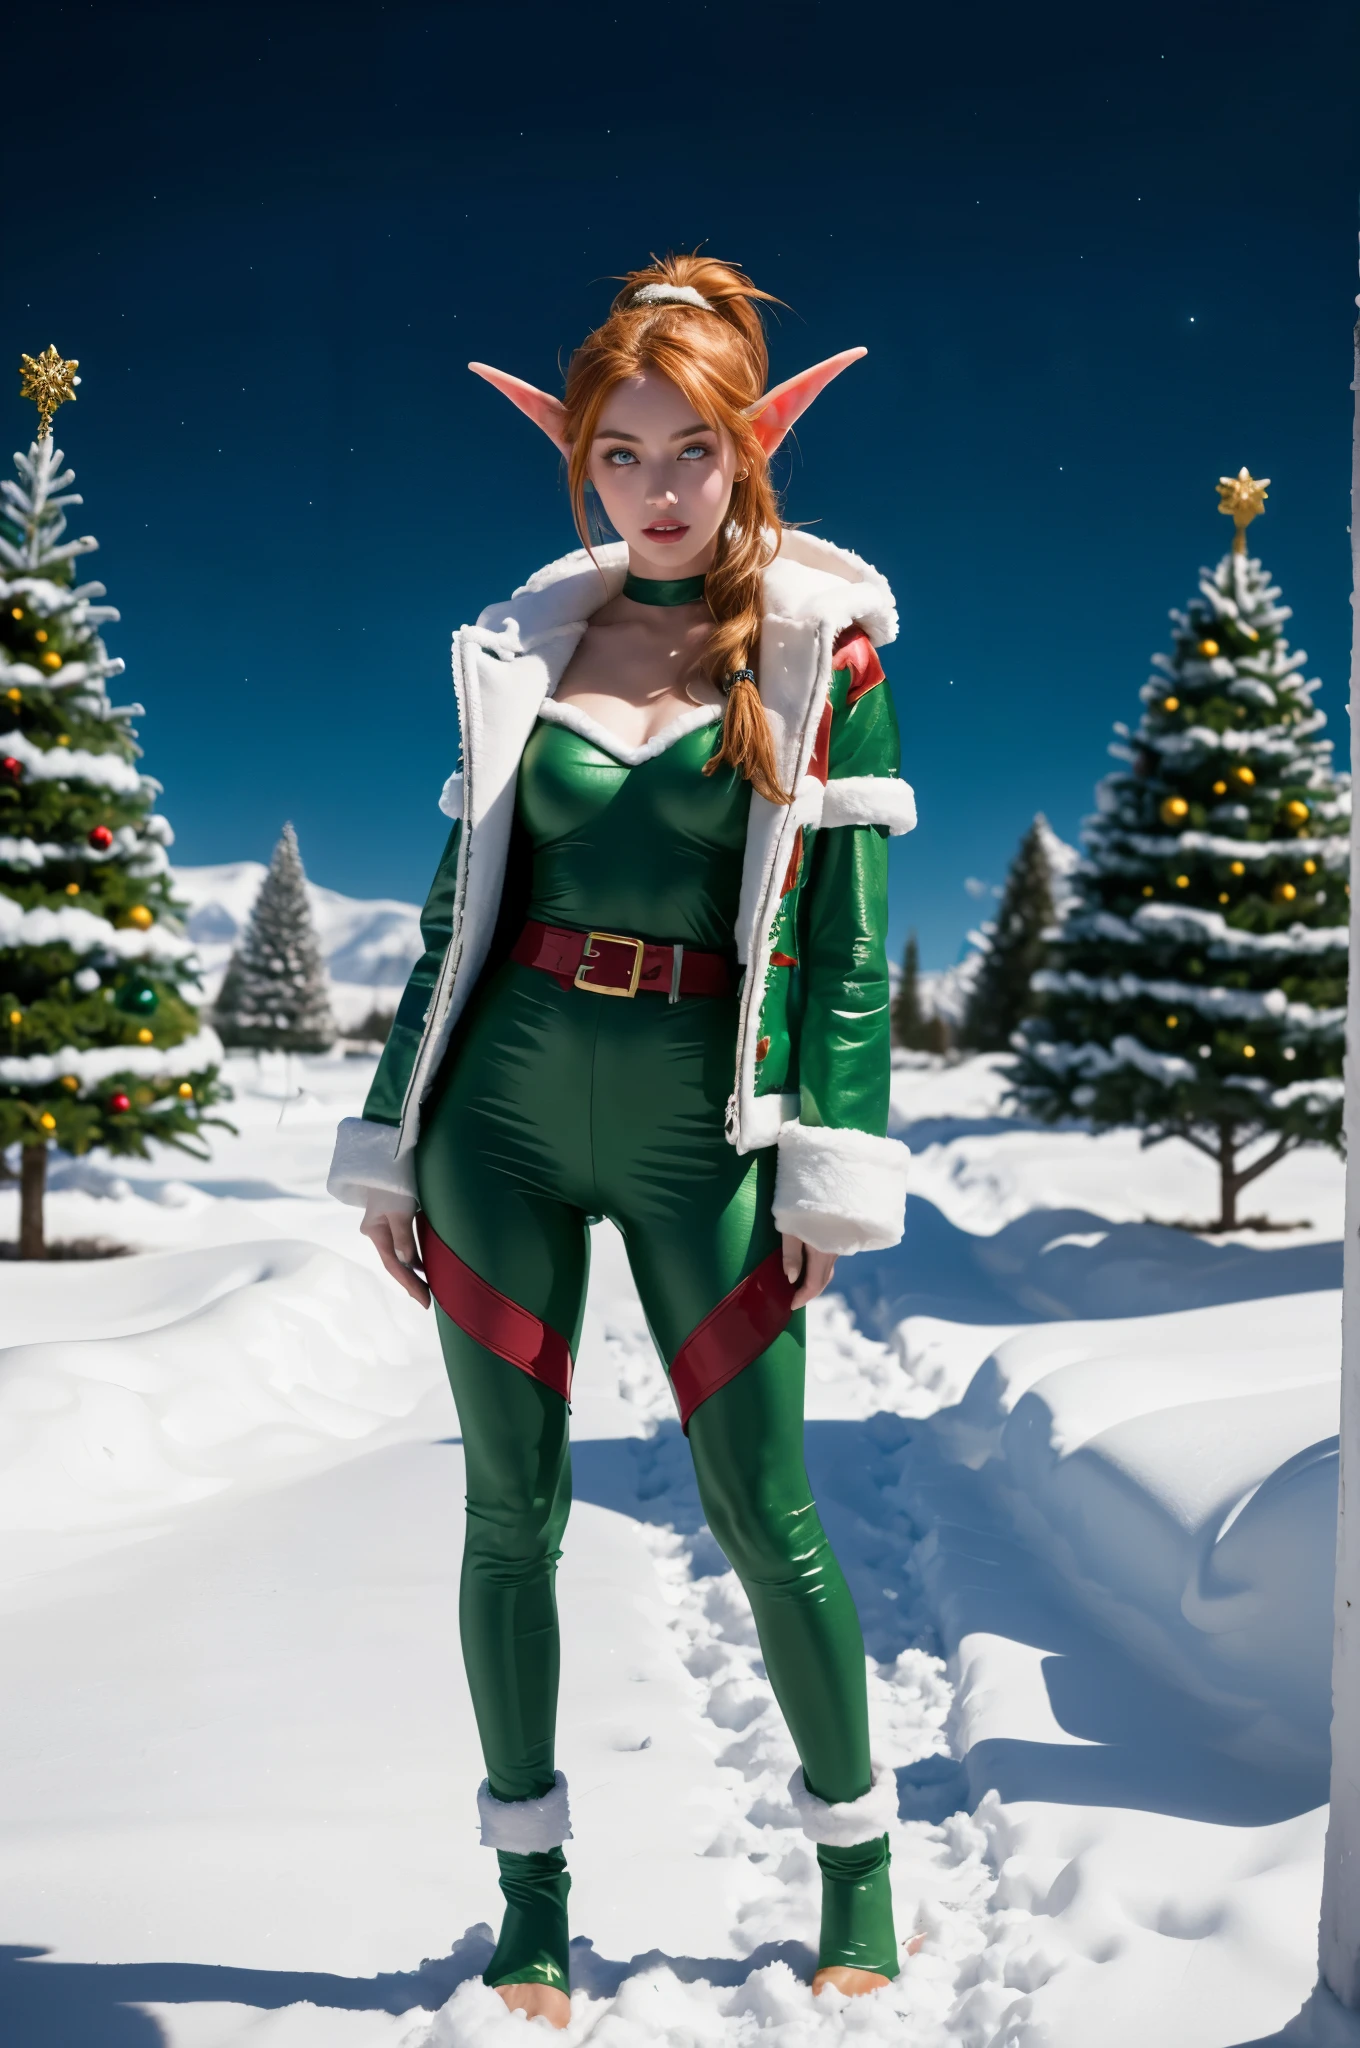 chef-d&#39;œuvre, raw photo of a stunningly beautiful World of Warcraft NIGHTELF with peau verte, jeune femme Holly Evergreen en elfe de Noël, 1fille, seulement, (queue de cheval au gingembre, les yeux jaunes:1.2), peau colorée, (peau verte:1.2), fantaisie, (porter un rouge moulant sexy/costume de Noël de couleur blanche avec fourrure:1.3), élégant, long cils, oreille d&#39;elfe, léger sourire, Surréalisme, anaglyphe, stéréogramme, portrait complet du corps, Corps féminin parfait, perspective atmosphérique, Éclairage cinématographique, lumière rougeoyante, pôle Nord, 8k euh, Super détail, Meilleure qualité